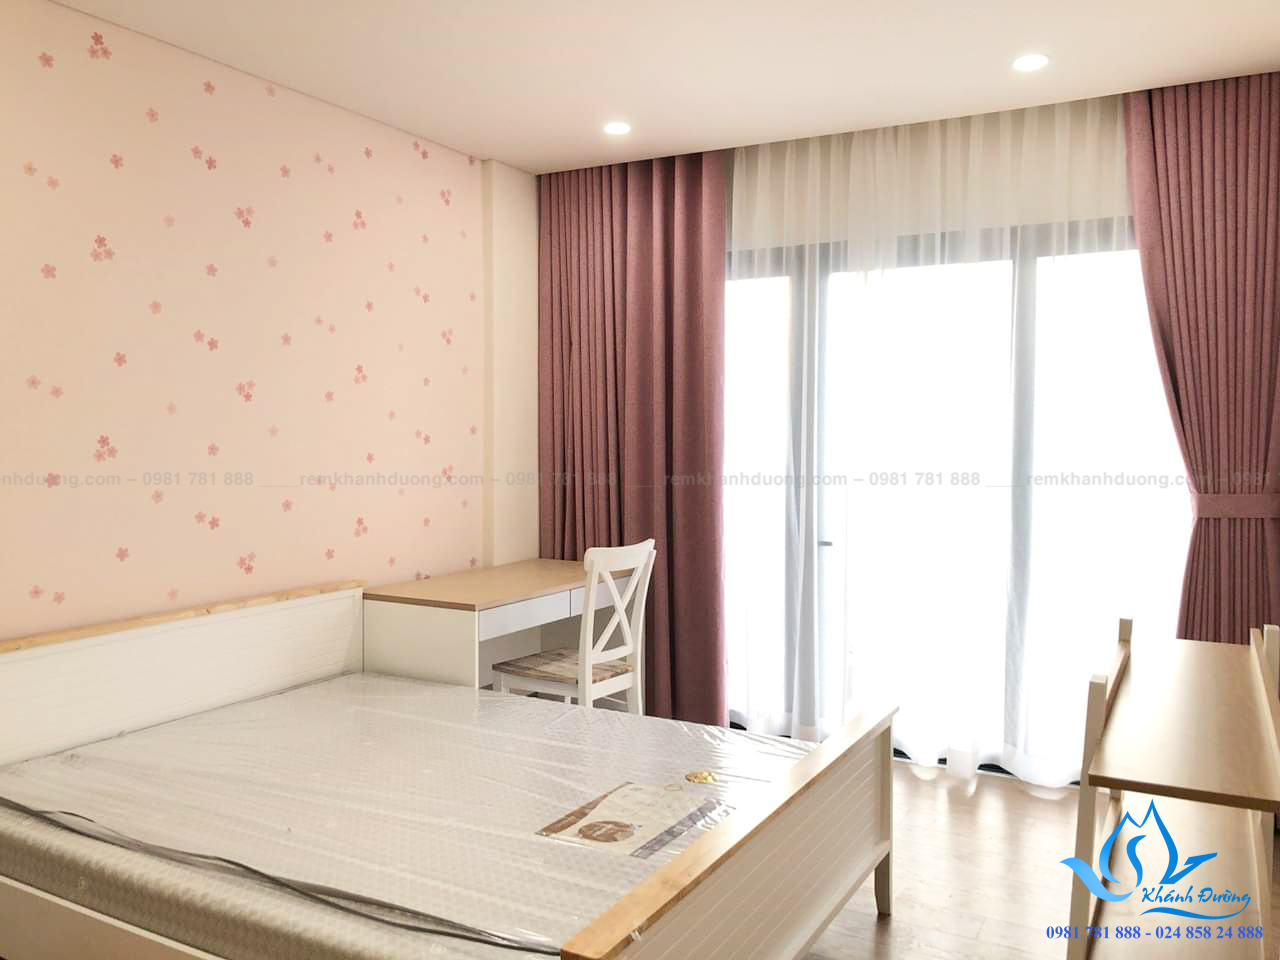 Rèm cửa phòng ngủ màu hồng đẹp đã trở thành xu hướng thịnh hành trong thiết kế nội thất phòng ngủ. Bởi vì nó mang đến sự ấm áp, dịu ngọt và tình cảm cho không gian. Ảnh minh họa sẽ cho bạn một cái nhìn sâu hơn về sức hút của rèm cửa phòng ngủ màu hồng đẹp này.